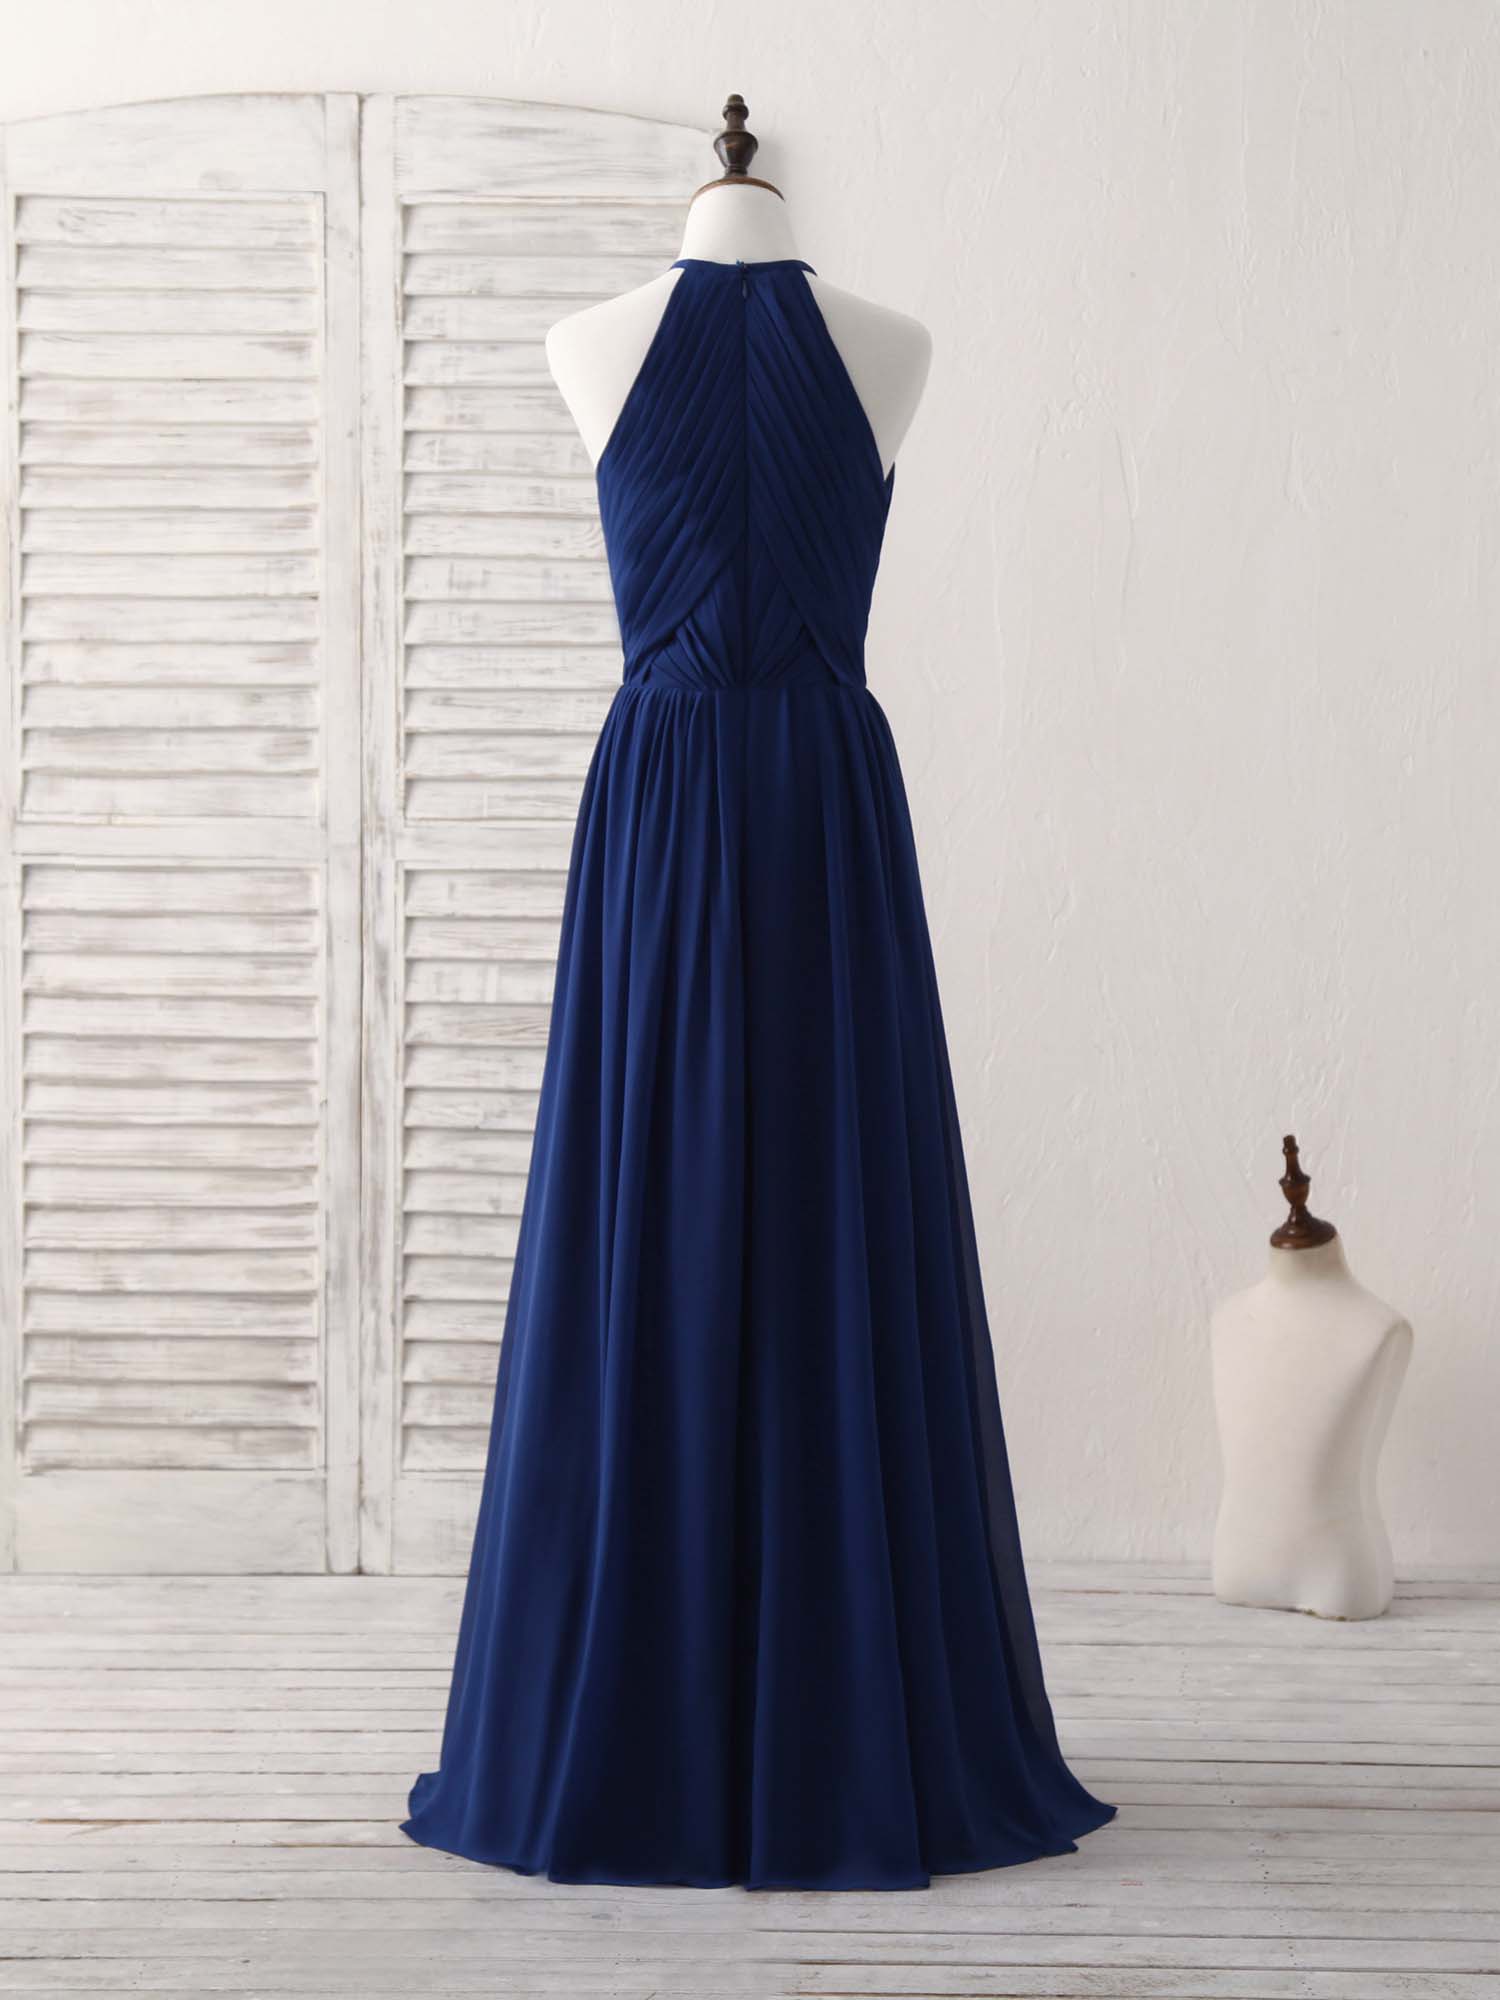 Bridesmaid Dress Purple, Simple Dark Blue Chiffon Long Prom Dress Blue Bridesmaid Dress